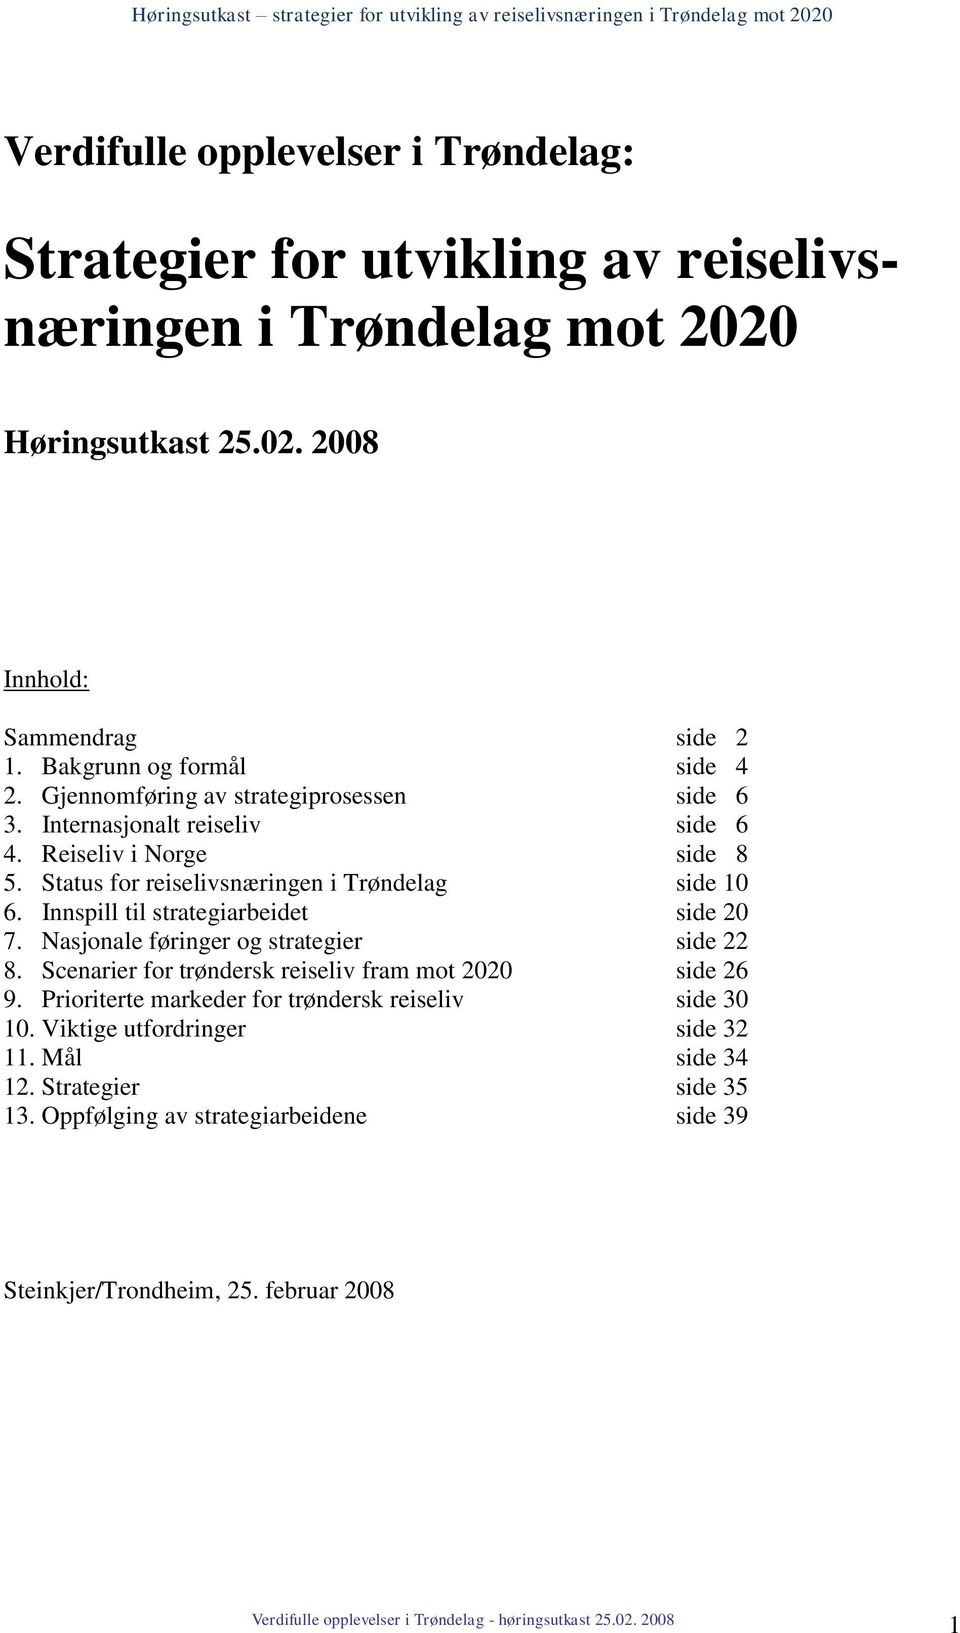 Status for reiselivsnæringen i Trøndelag side 10 6. Innspill til strategiarbeidet side 20 7. Nasjonale føringer og strategier side 22 8.